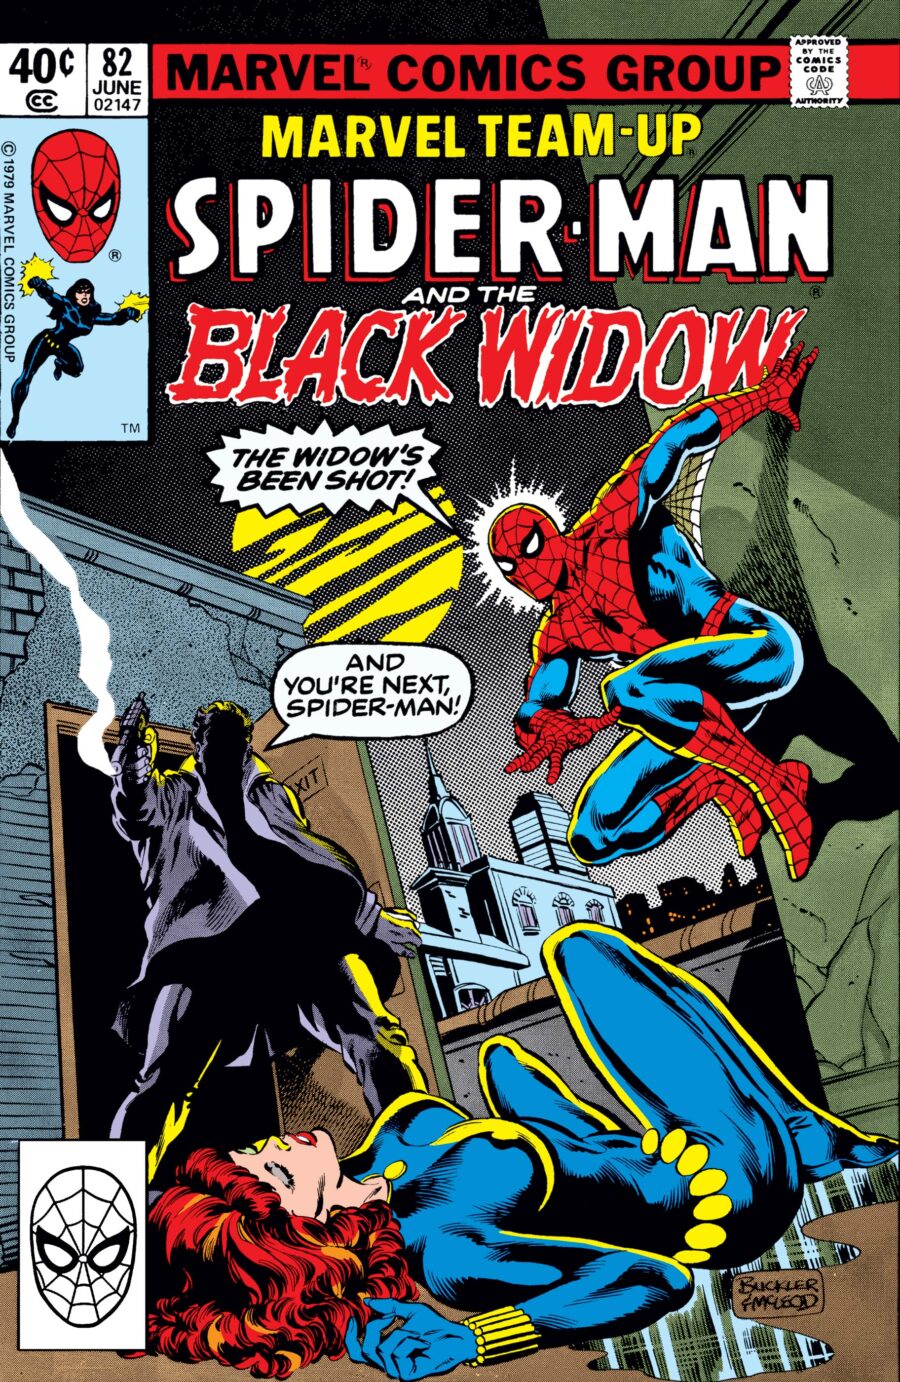 spider-man black widow marvel team-up